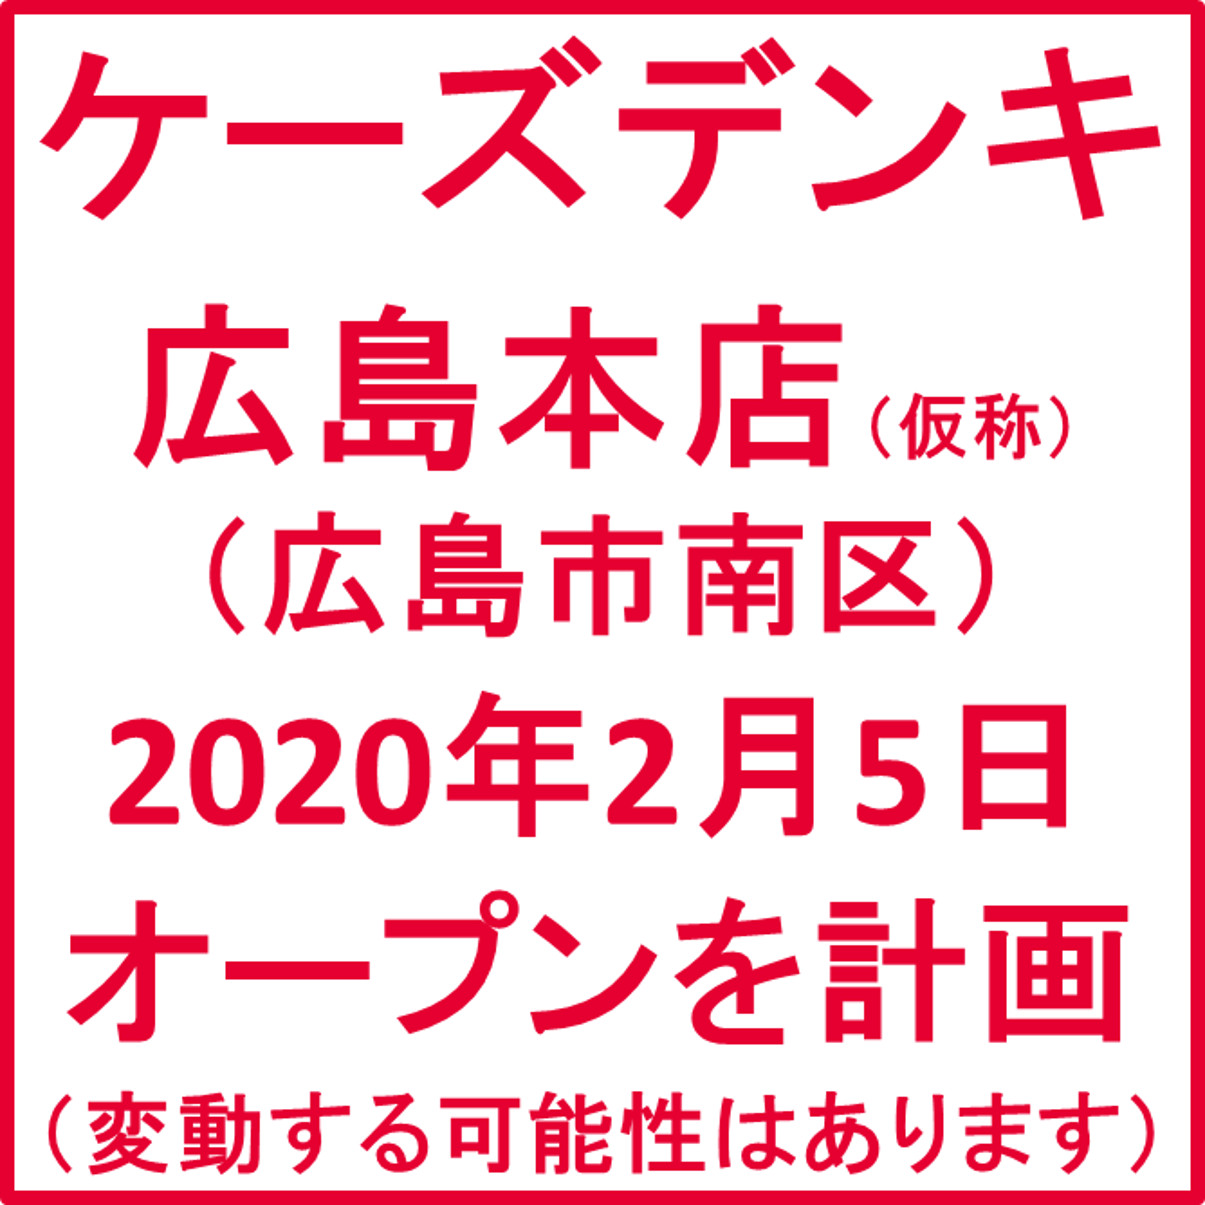 ケーズデンキ広島本店仮称_20200205オープン計画_アイキャッチ1205